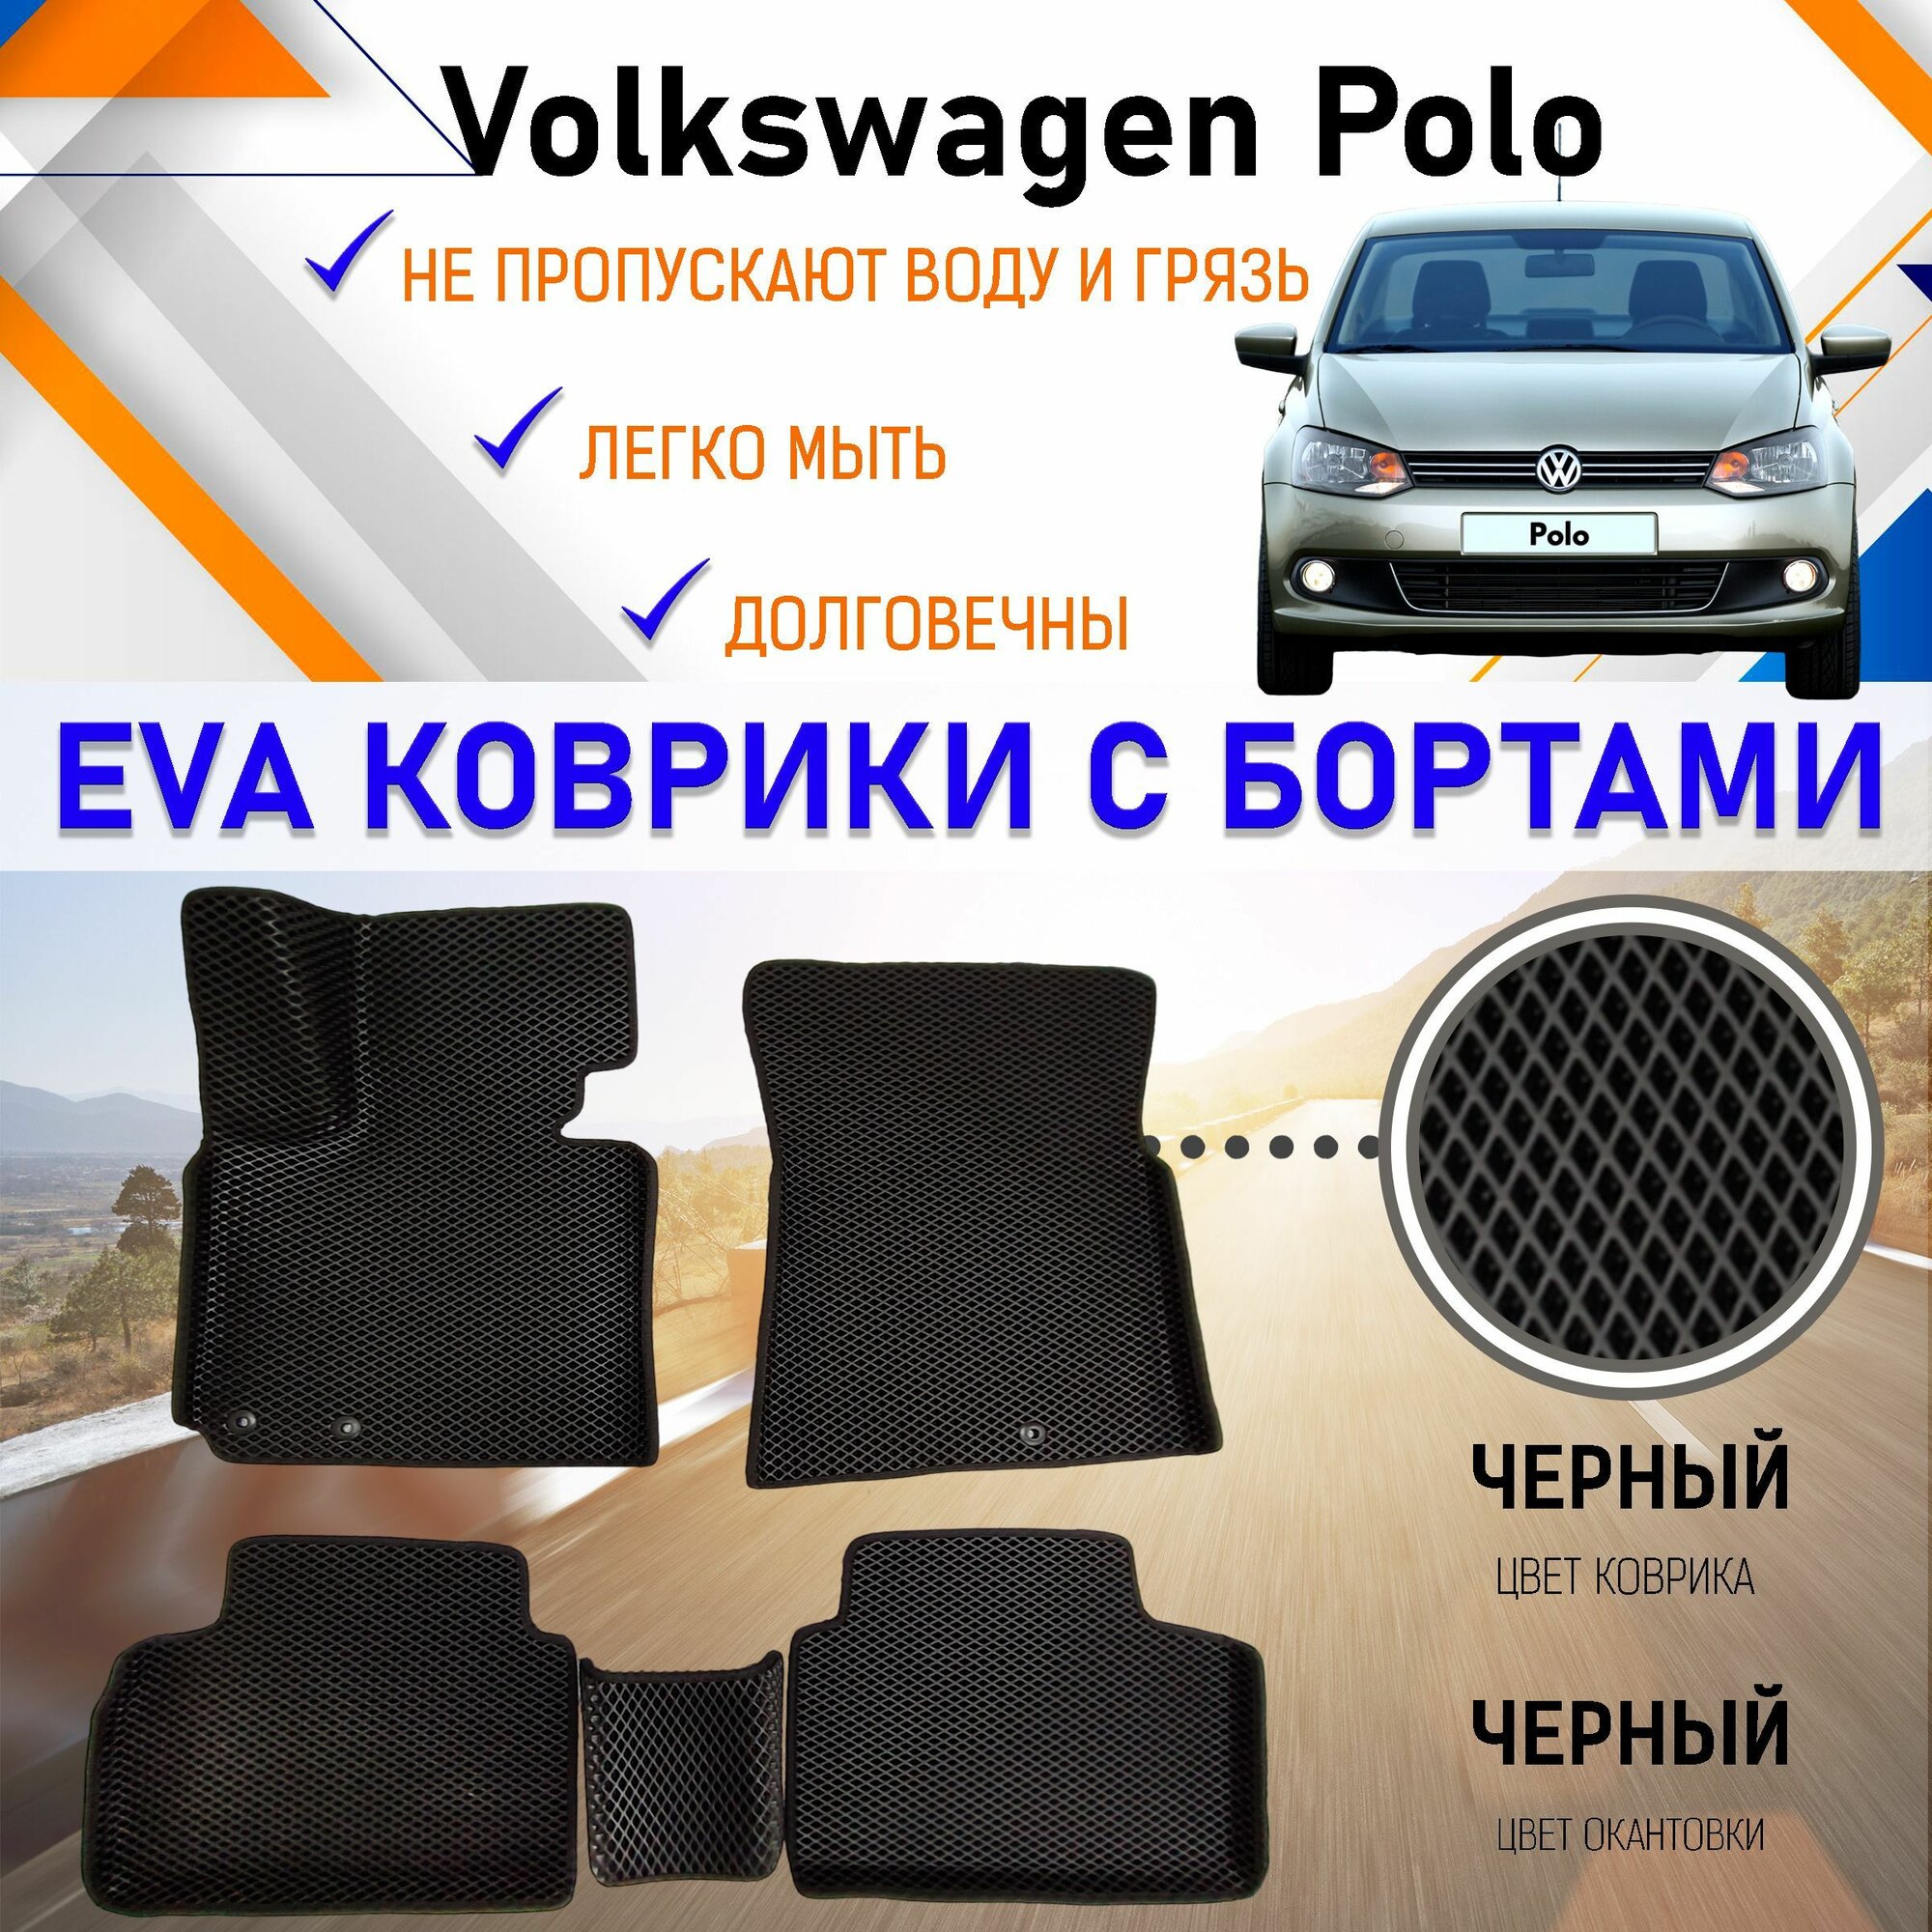 Коврики в салон автомобиля с бортами ЕVA EVO ЭВО ЭВА Volkswagen Polo Фольцваген Поло (седан), резиновый настил для защиты салона авто от грязи и воды